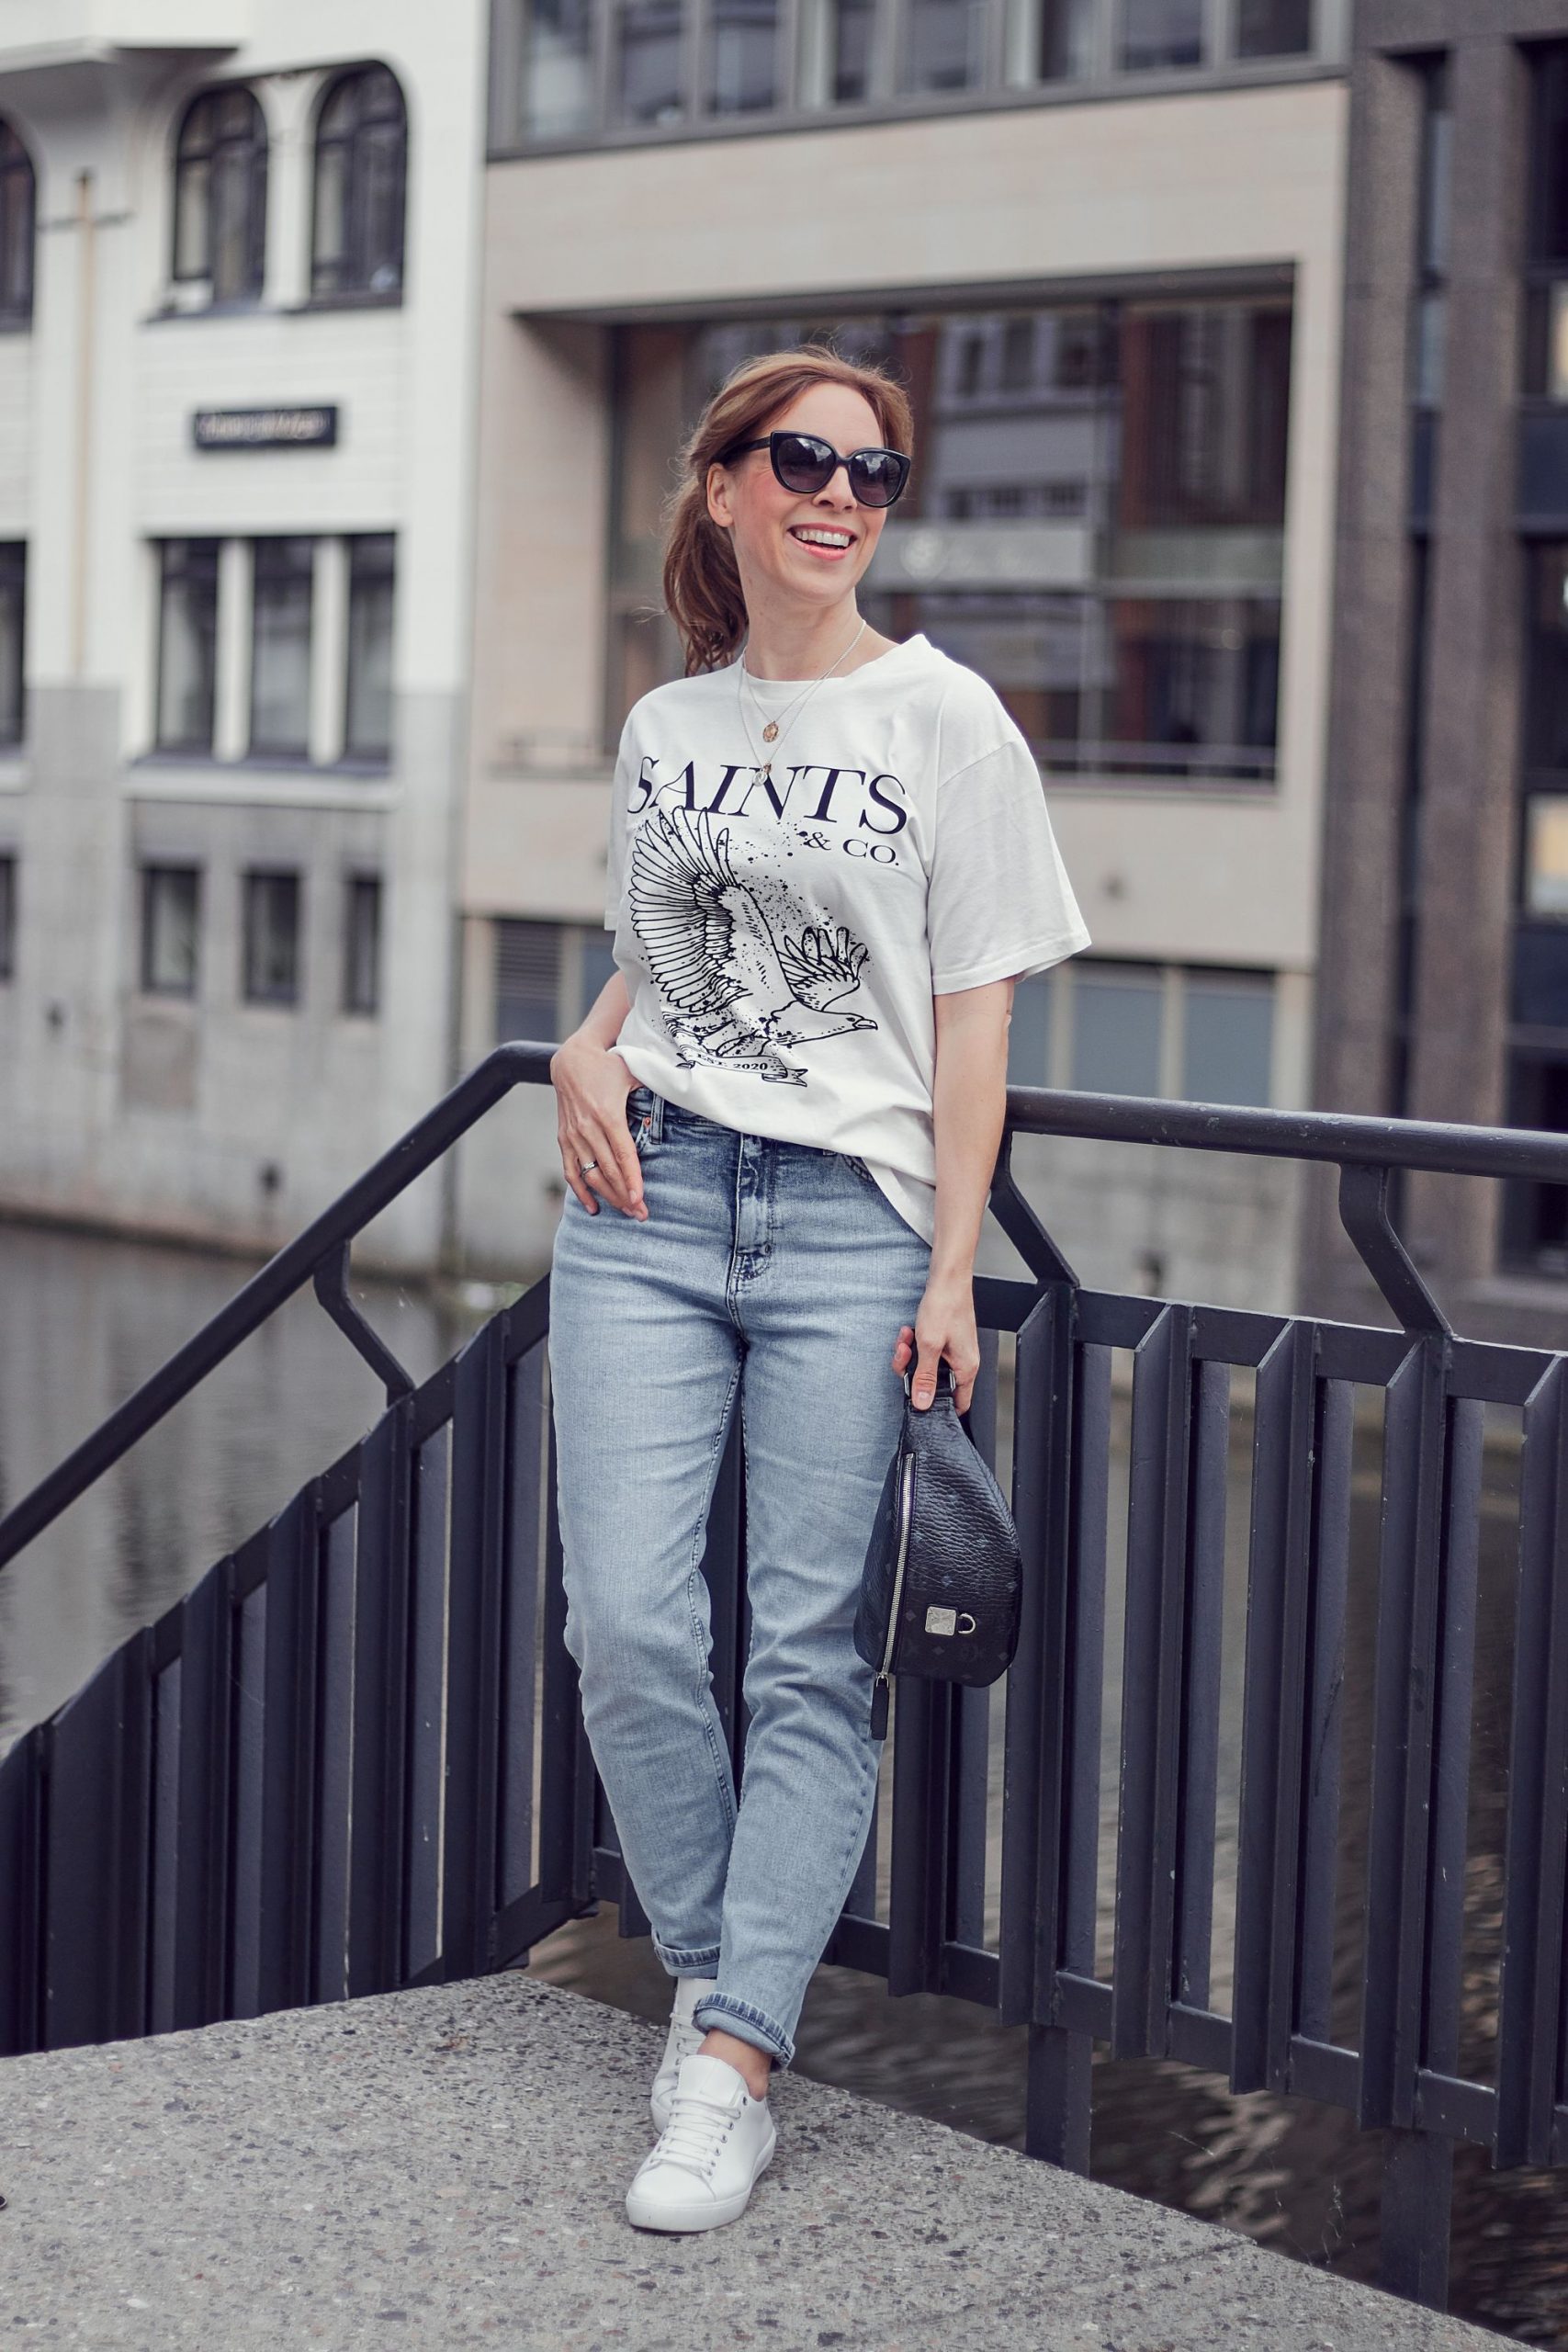 Saints and Co Off-White T-Shirt zu Mom Jeans mit Gürteltasche und Sneakern in weiß.